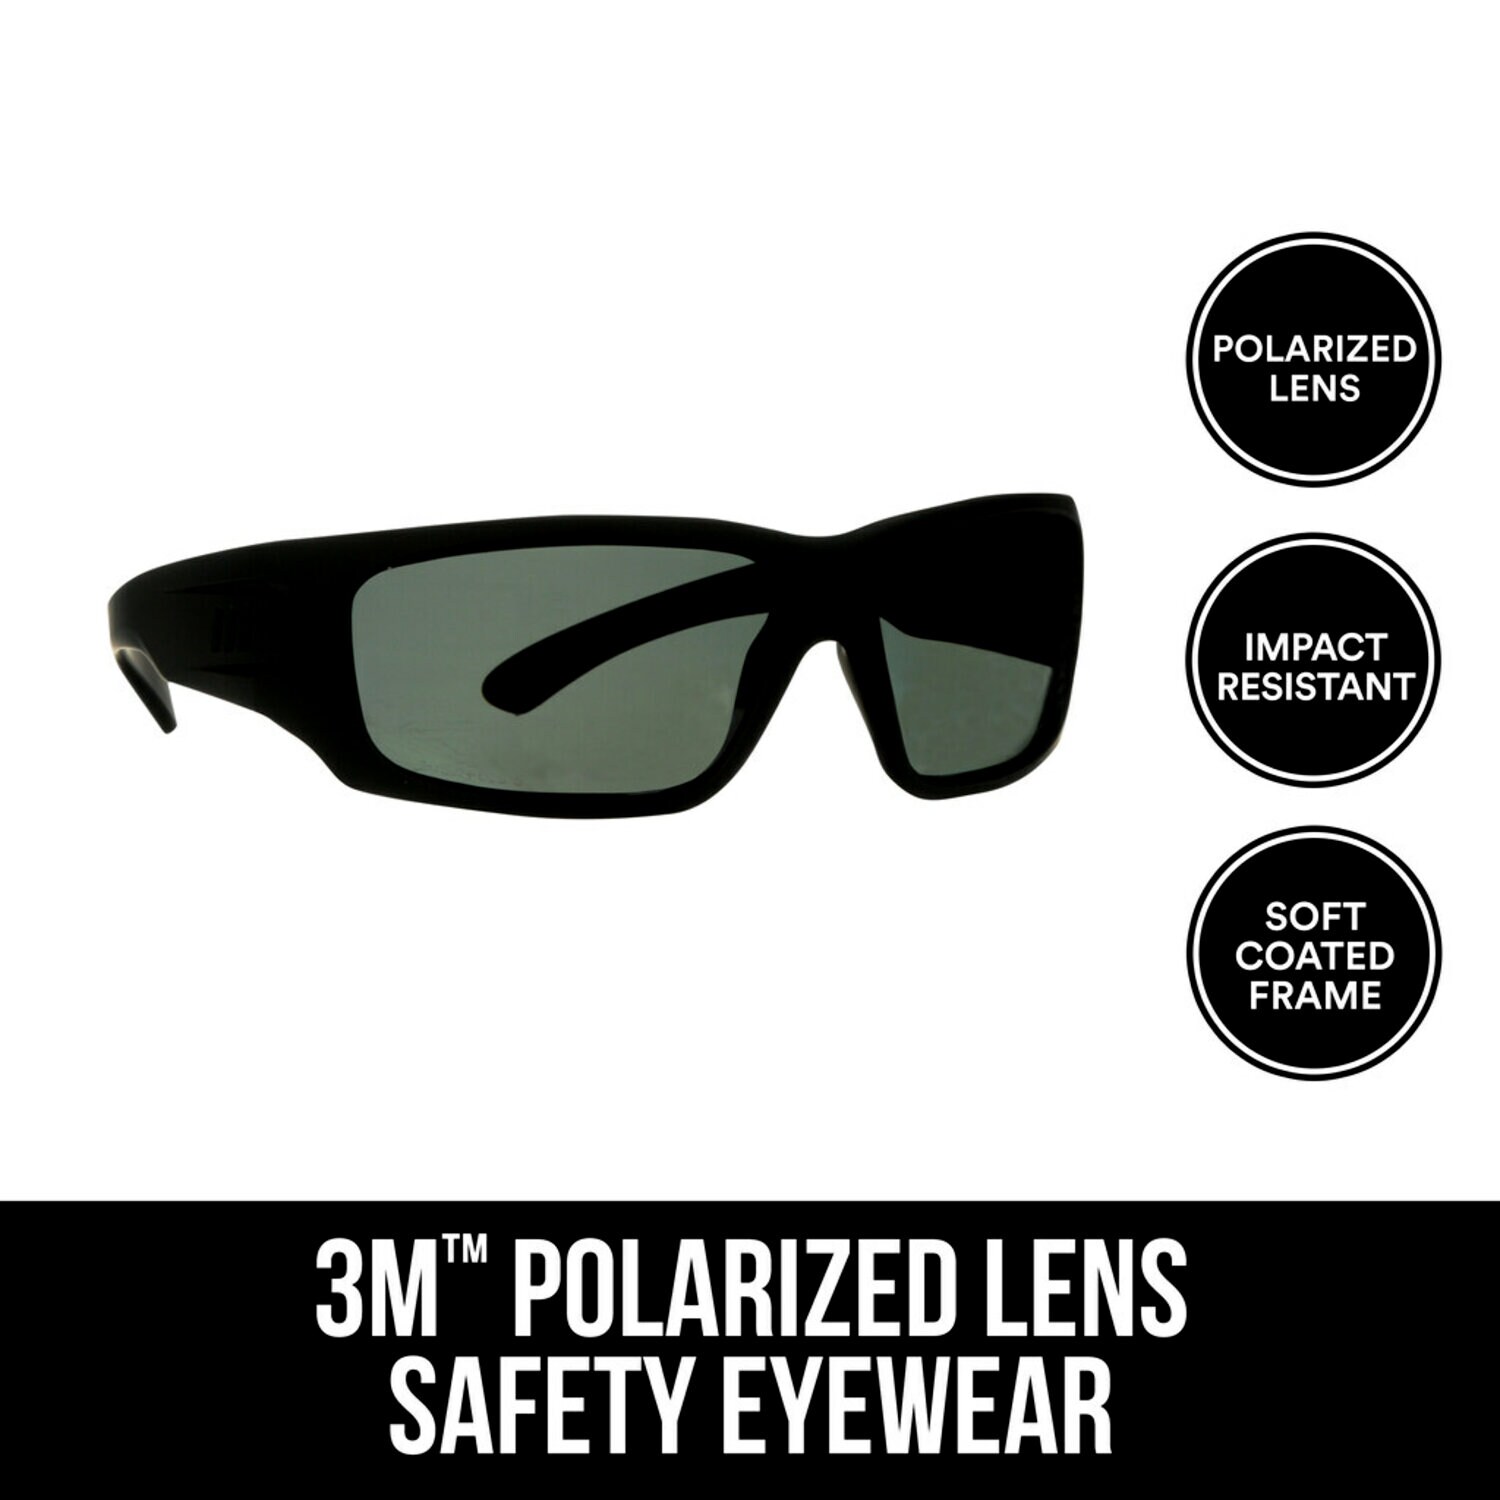 7100158596 - 3M Safety Eyewear Polarized, 90214-HZ4-NA, Blk Frame, AF & Scratch
Resistant Lens, 4/cs